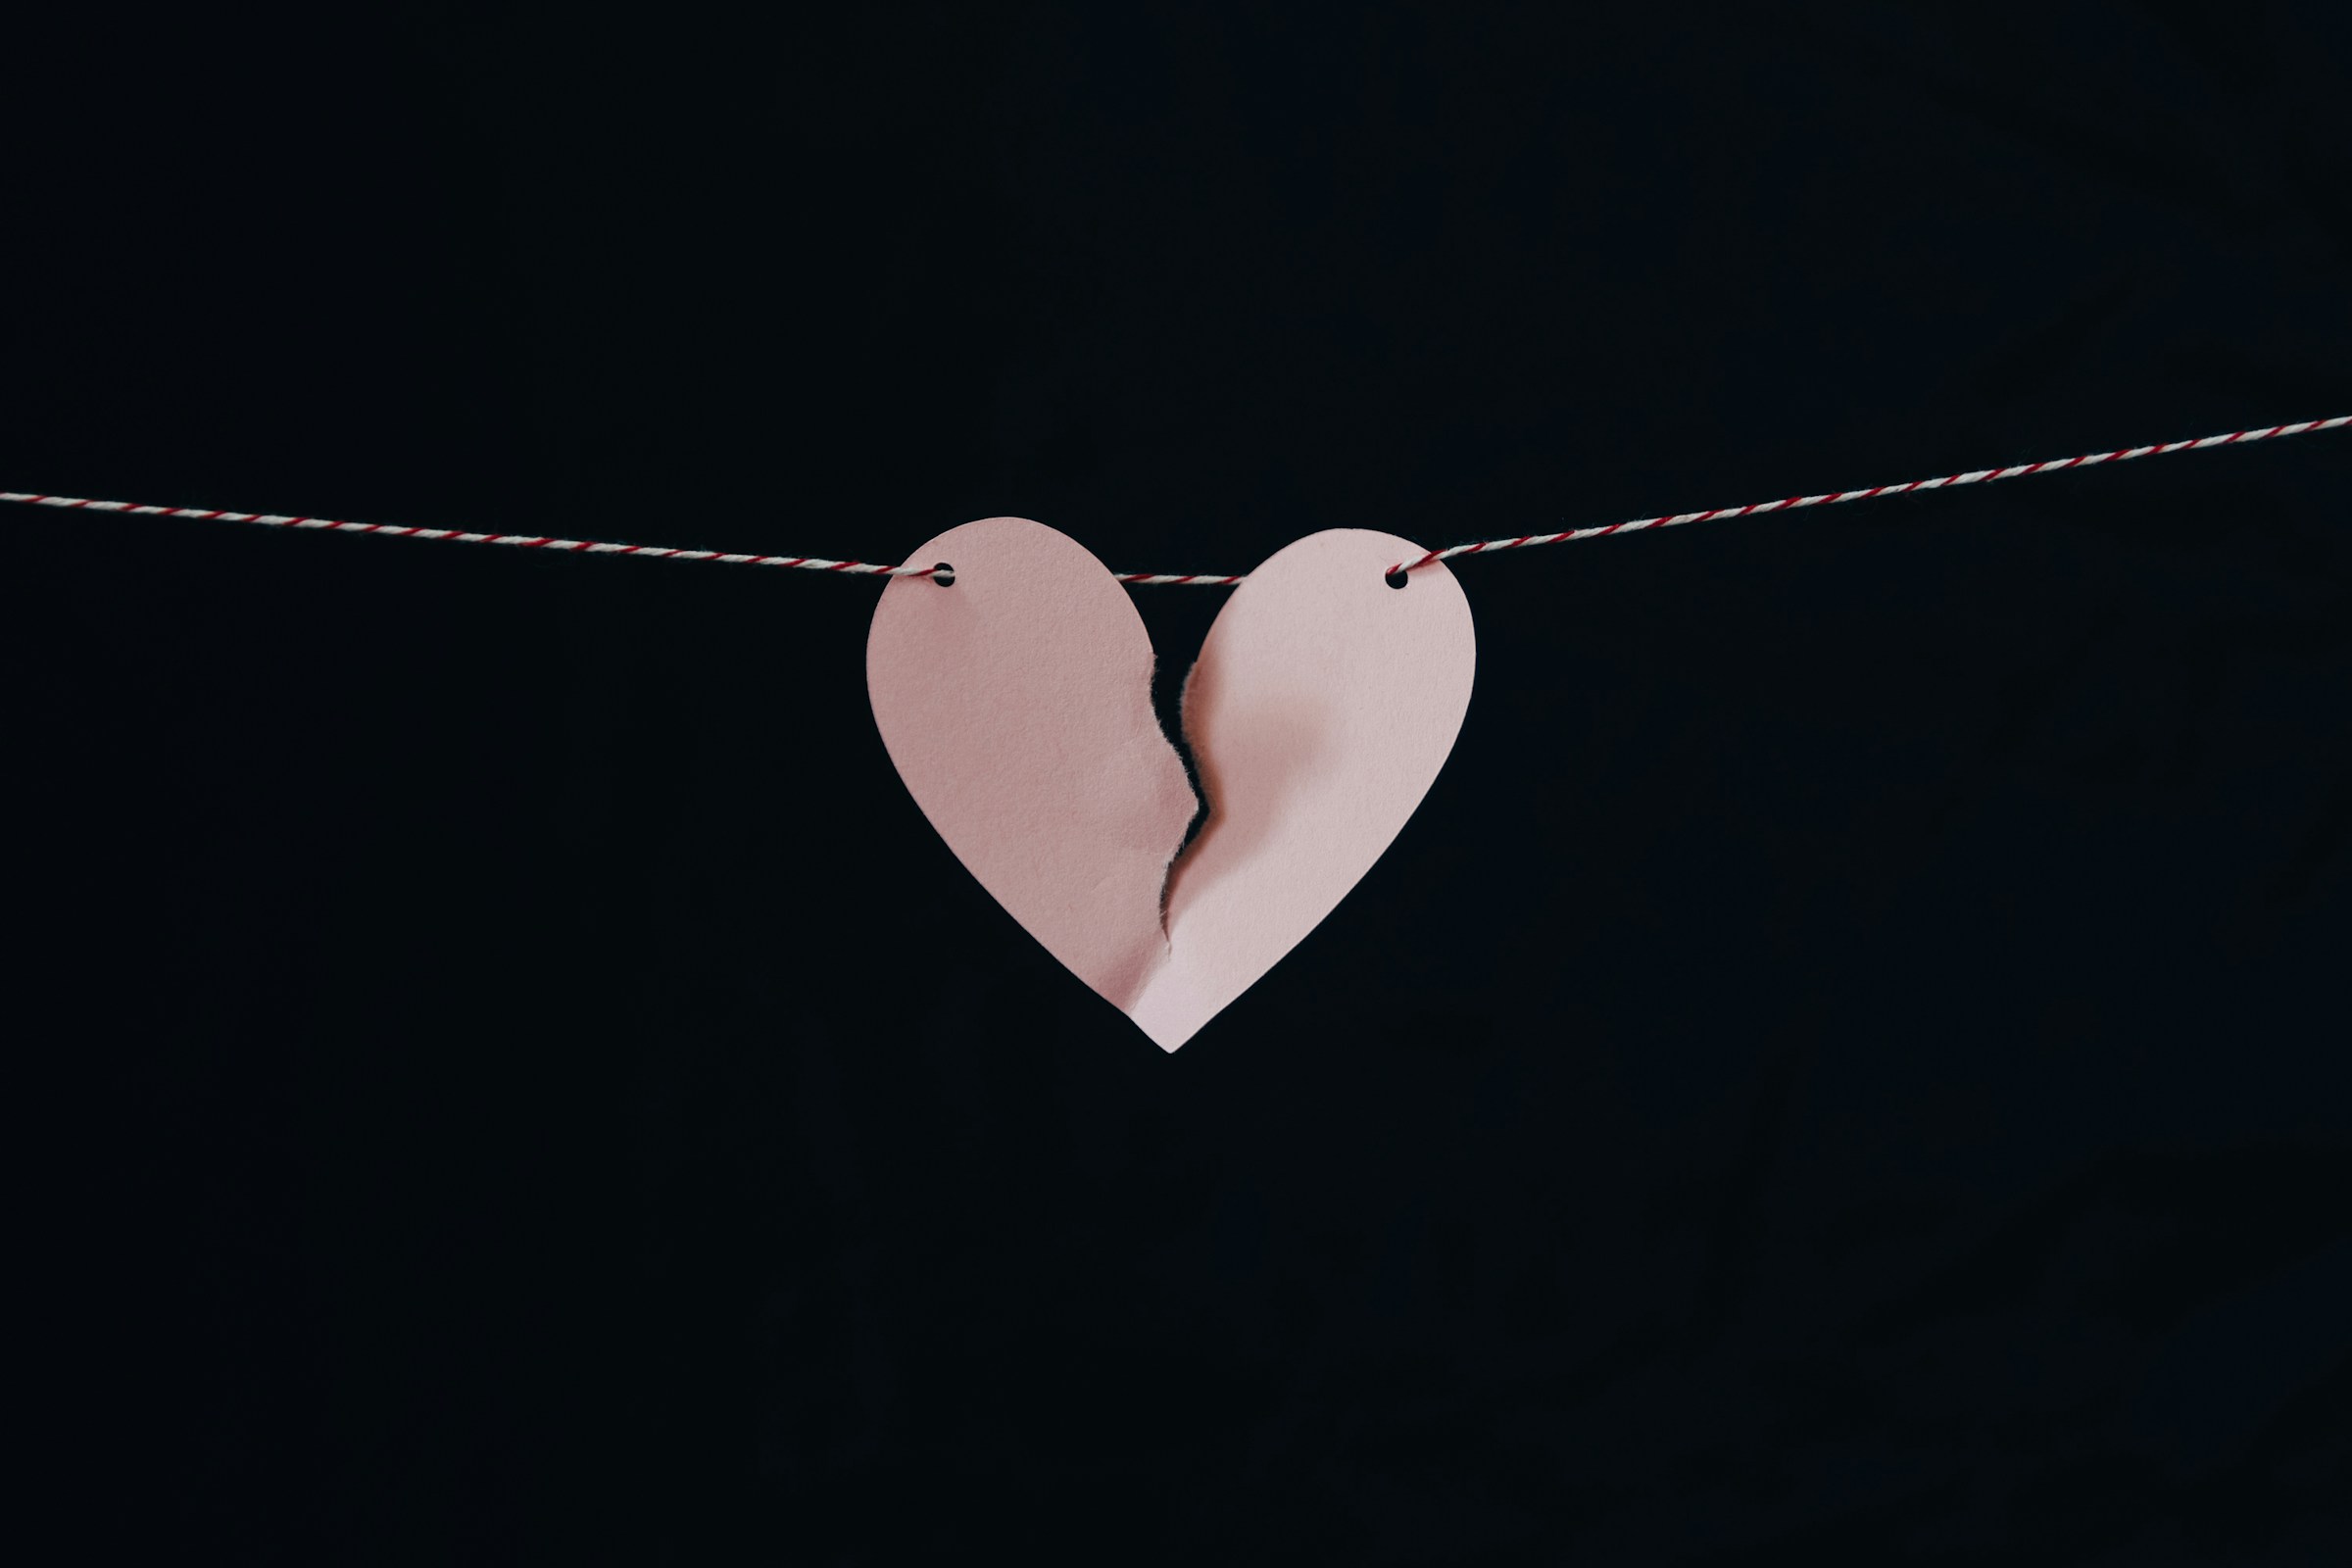 Un cœur en papier brisé accroché à un fil de fer | Source : Unsplash